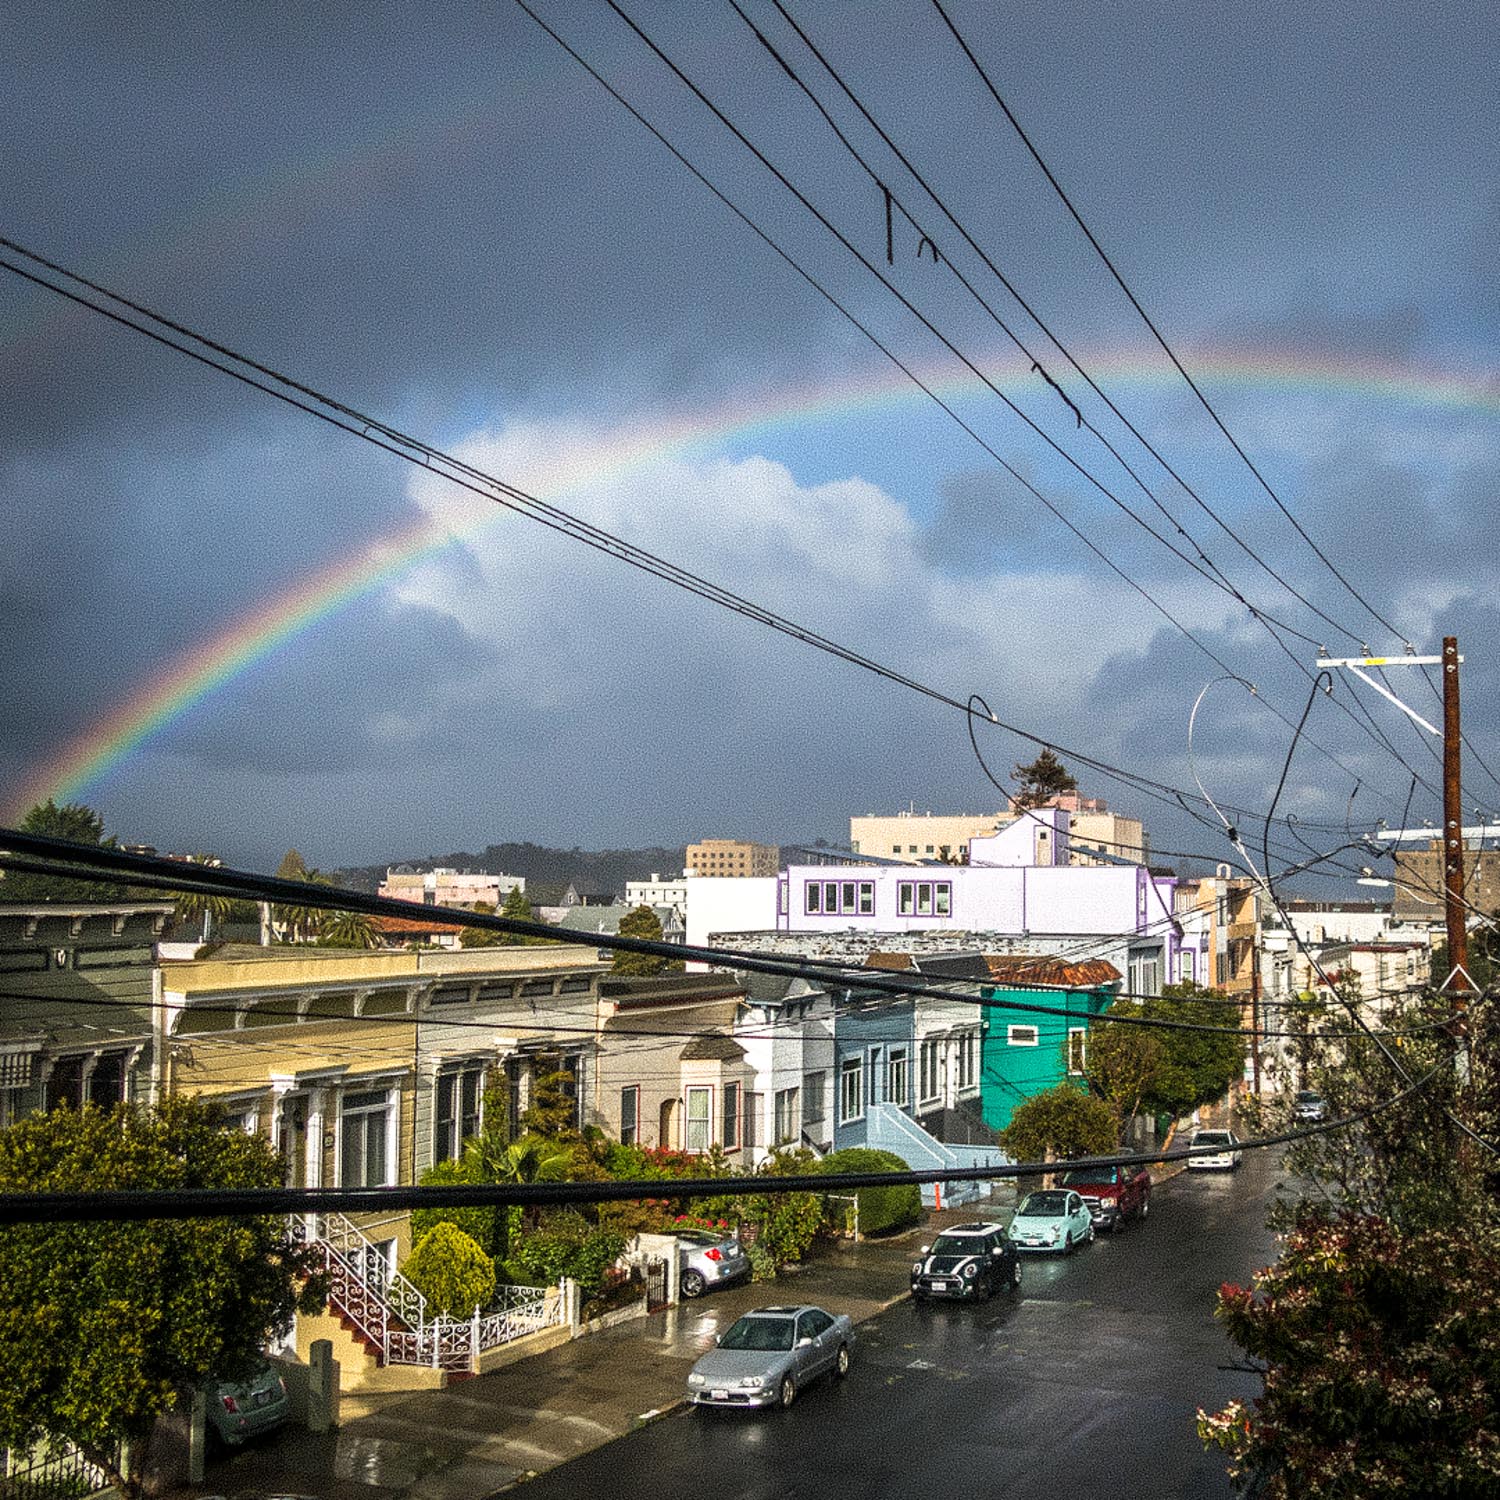 A rainbow over a wet street